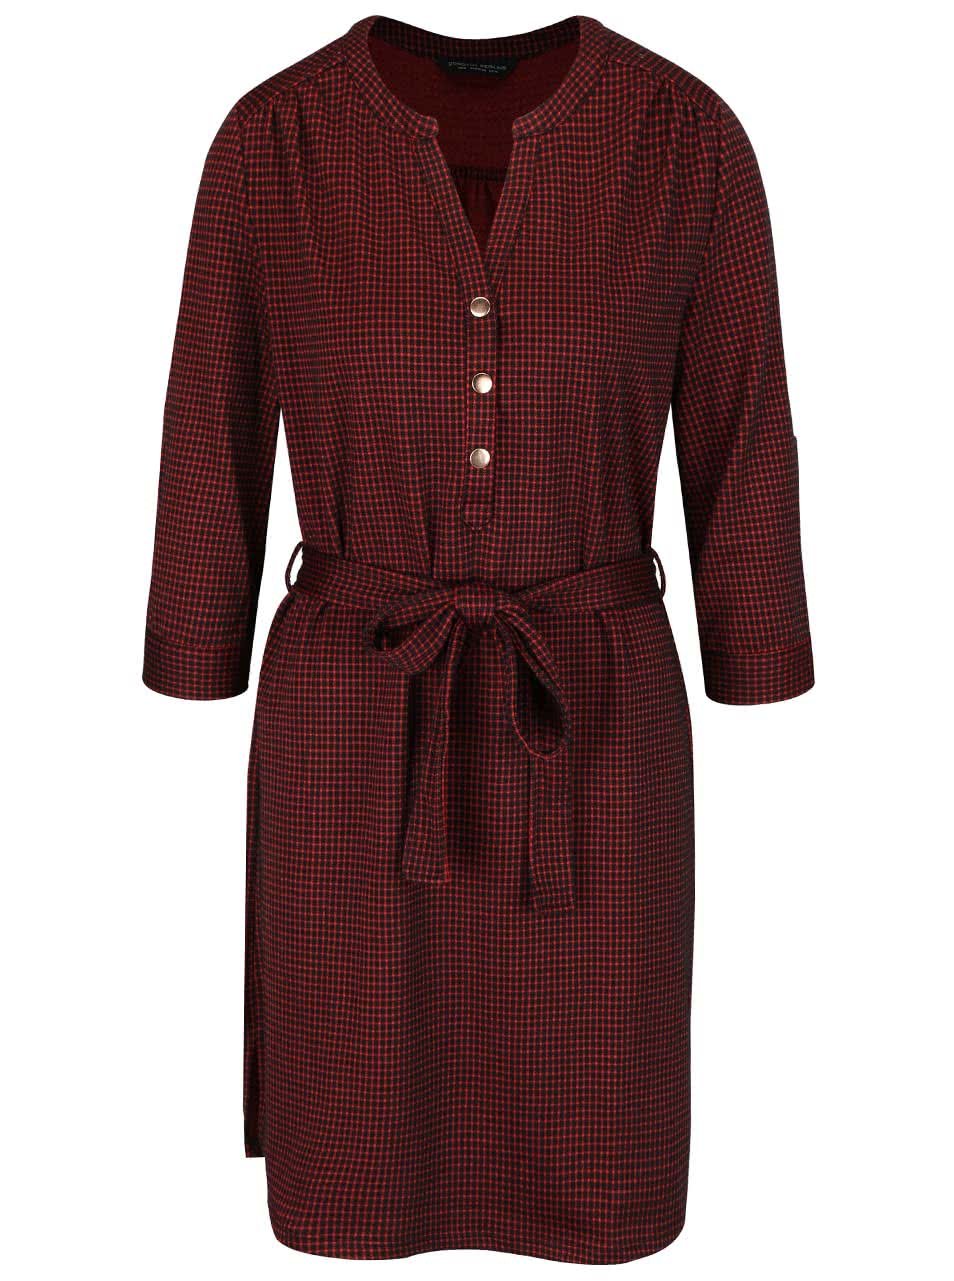 Černo-červené kostkované šaty s 3/4 rukávy Dorothy Parkins